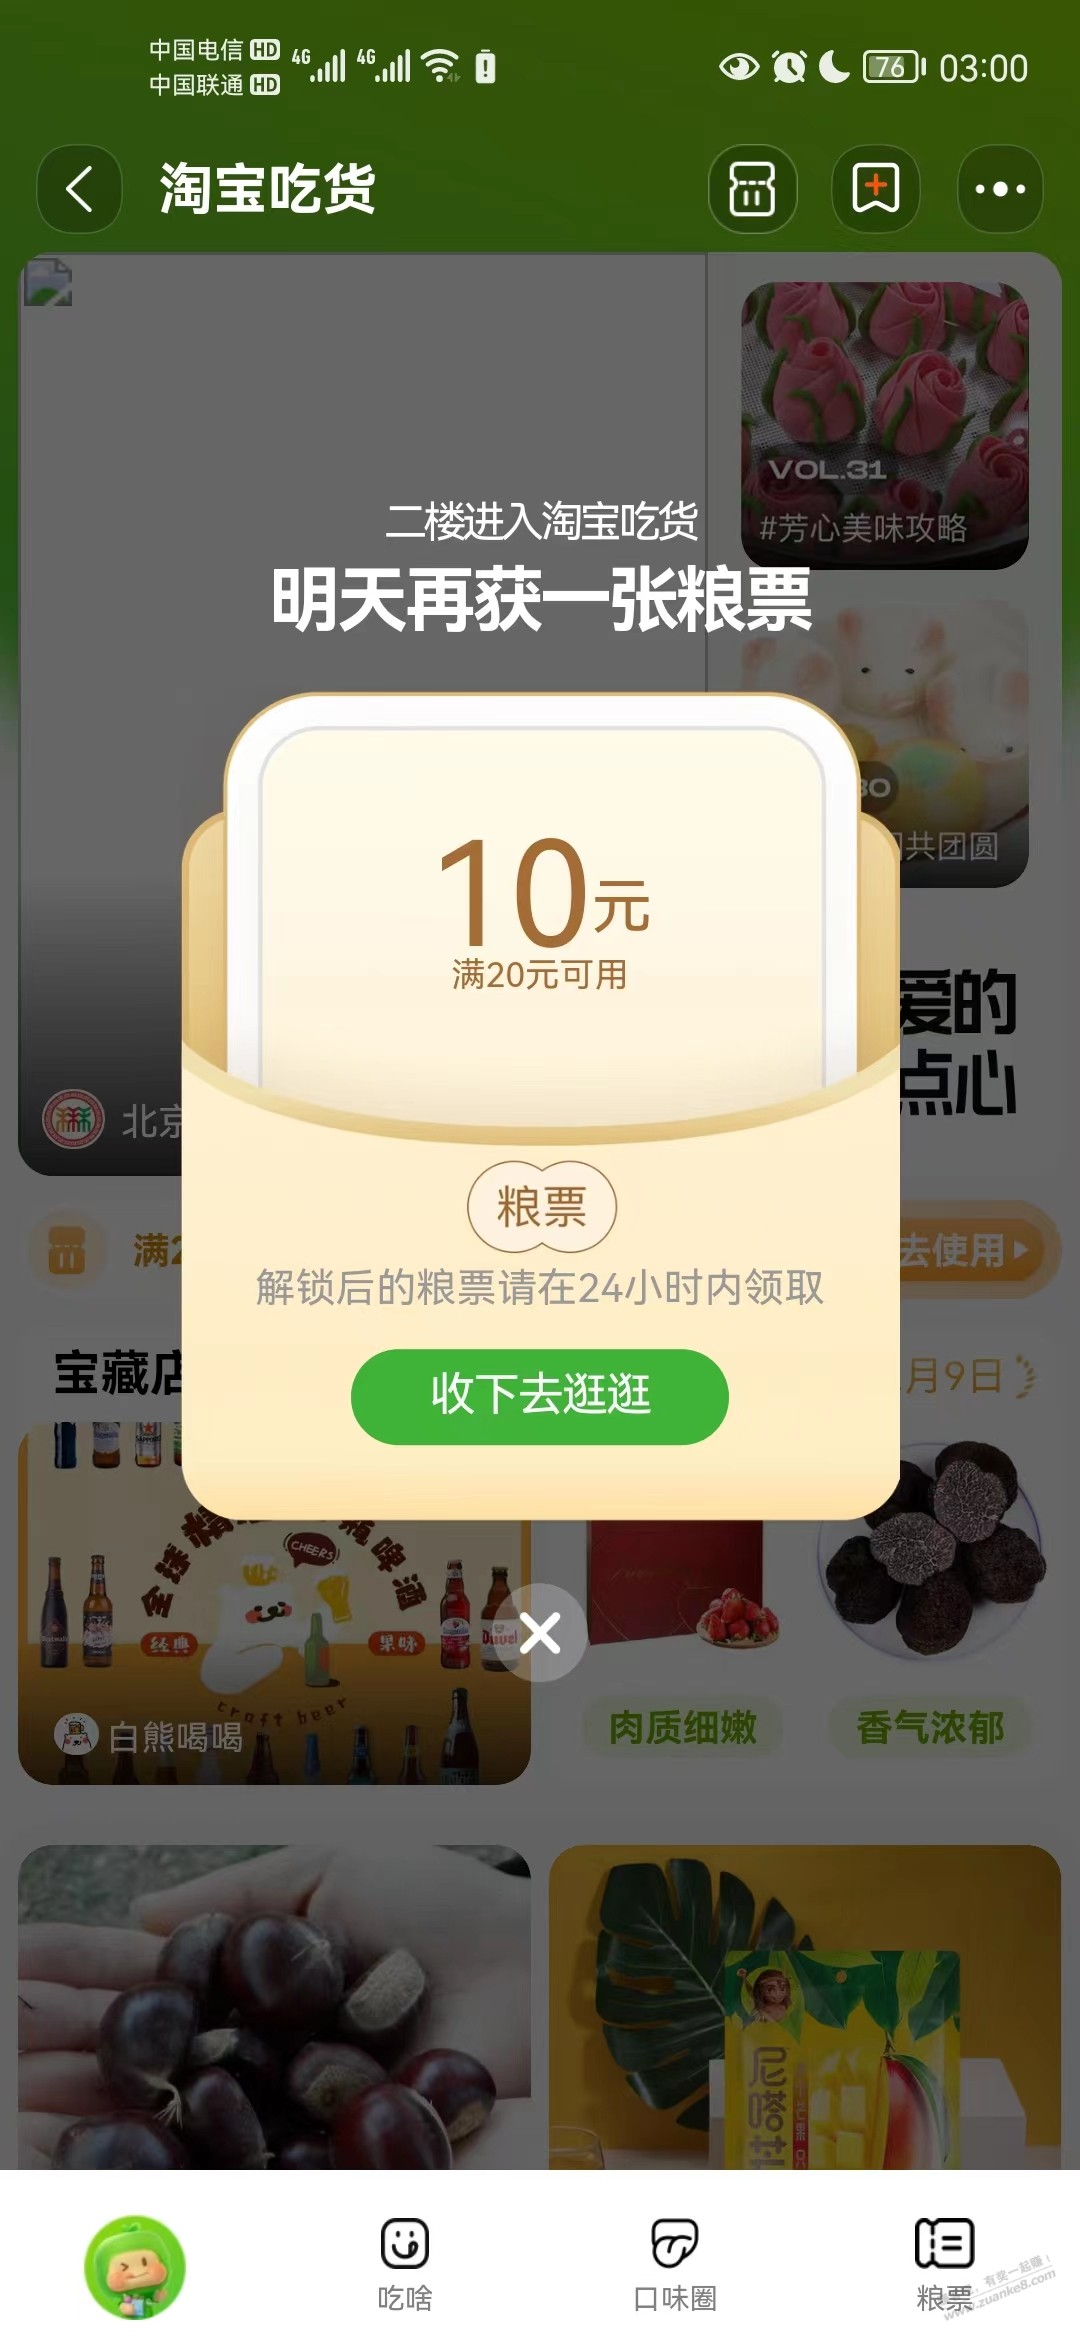 速领淘宝吃货粮票券20-10/10-5-惠小助(52huixz.com)